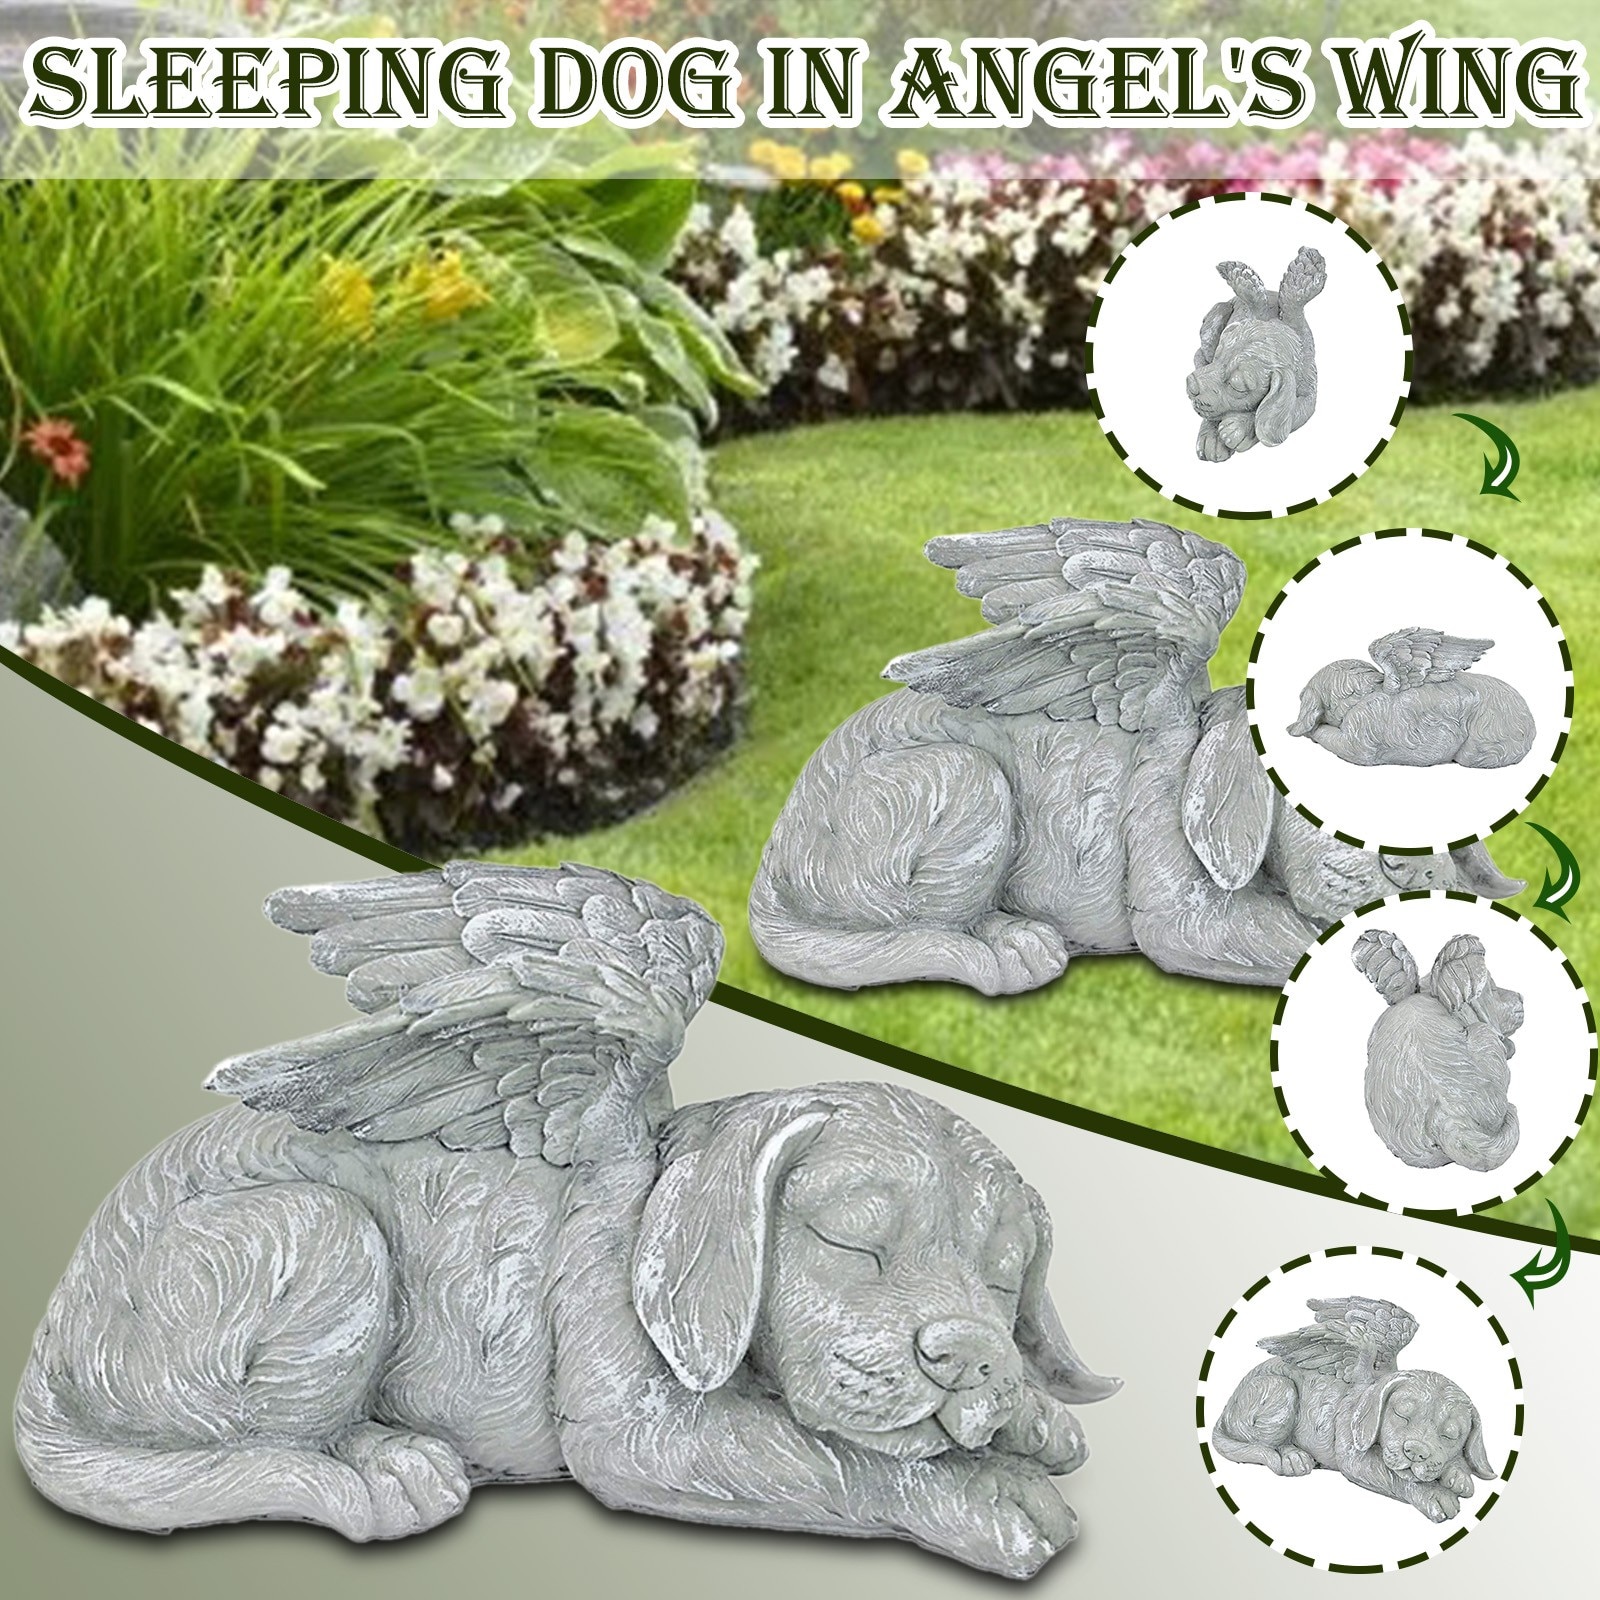 Outdoor Tuin Sculptuur Tuin Decor Ornamenten Slapen Hond In Angel 'S Wing Beeldjes Outdoor Tuin Ornament Resin Craft Yard